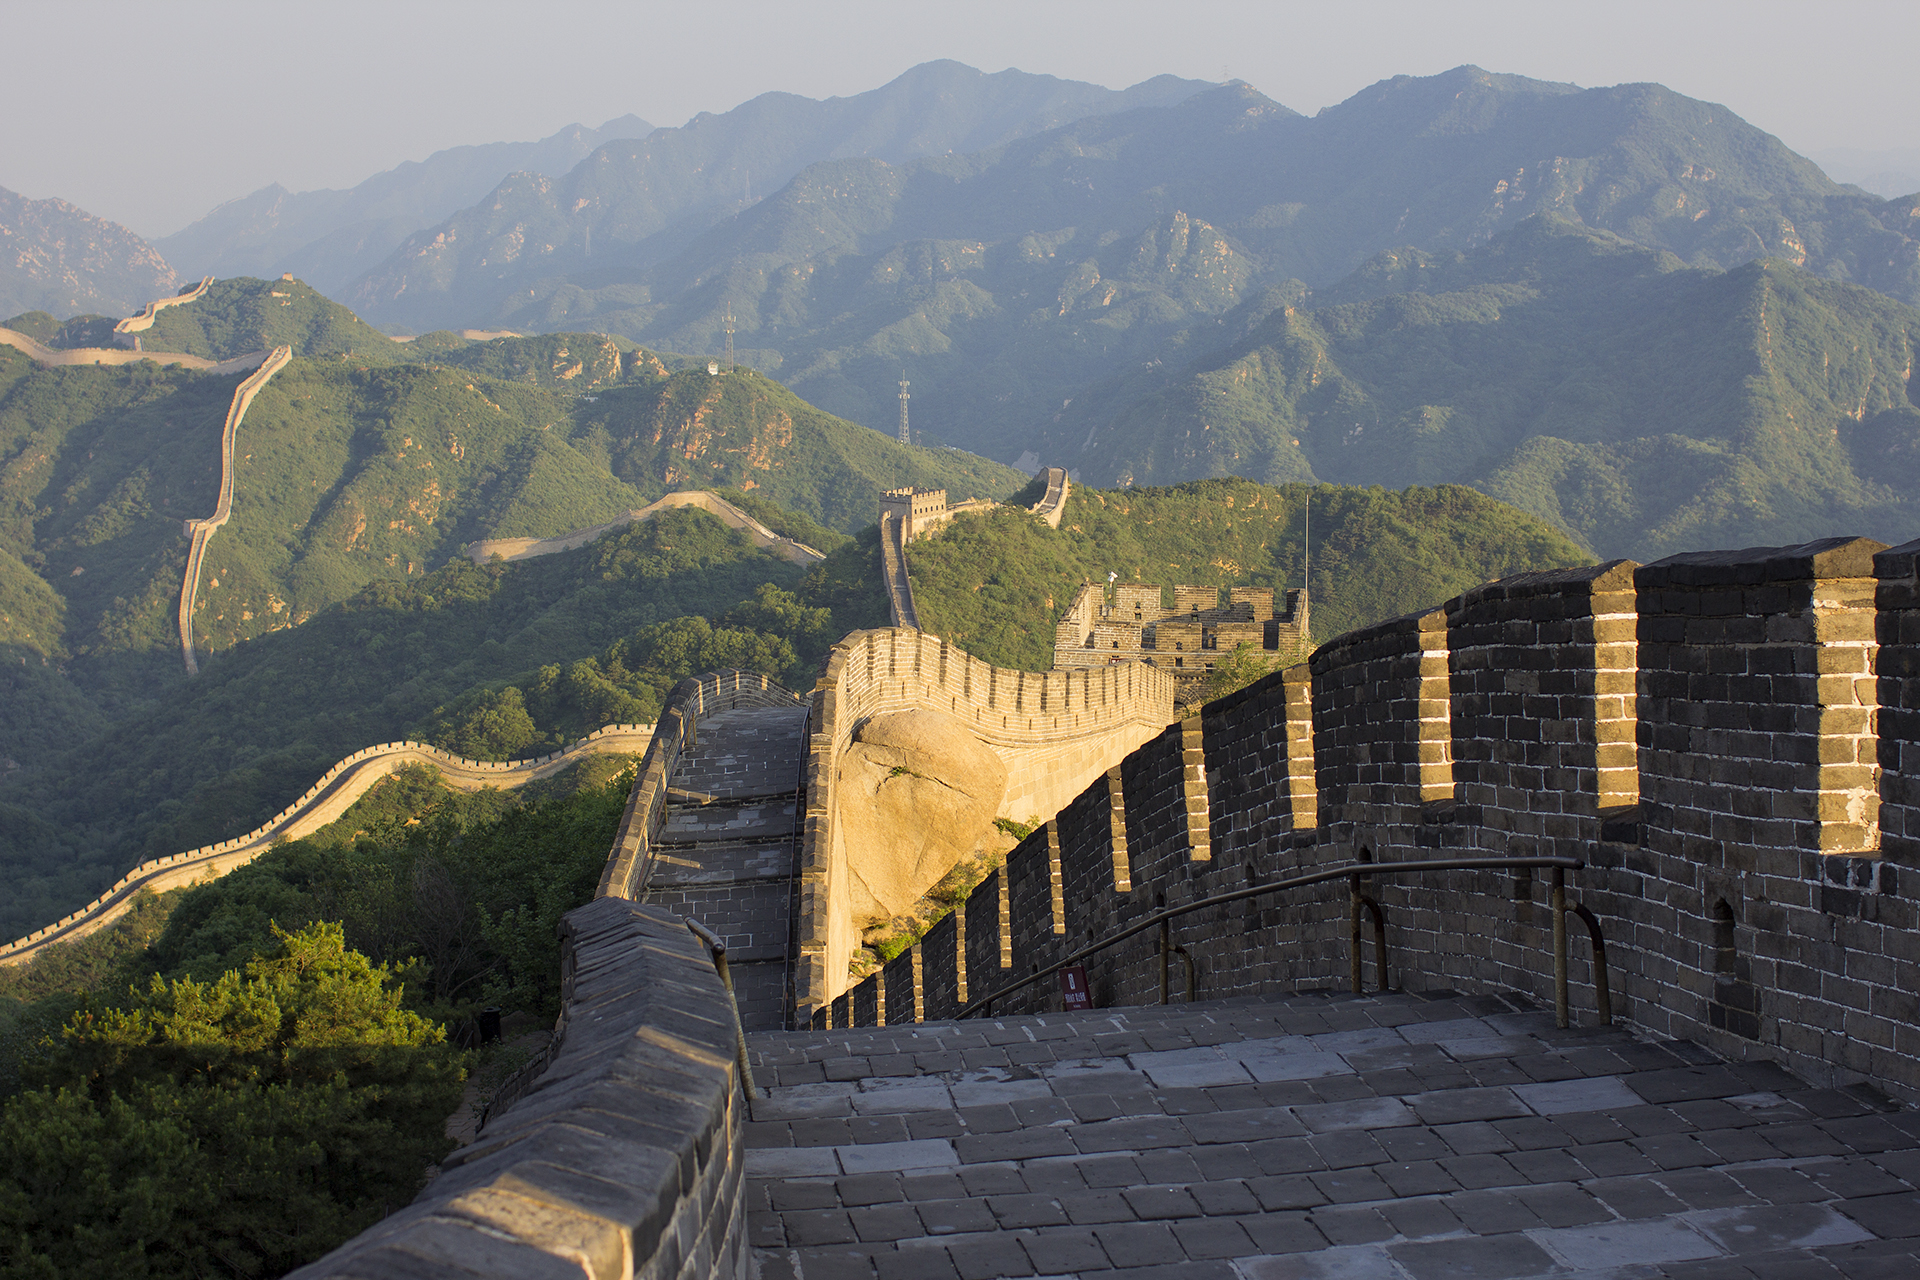 Китайская стена. Великая китайская стена Адалин. Бадалин китайская стена. Великой китайской стены «стена Бадалин». Великая китайская стена (отрезок Бадалин).